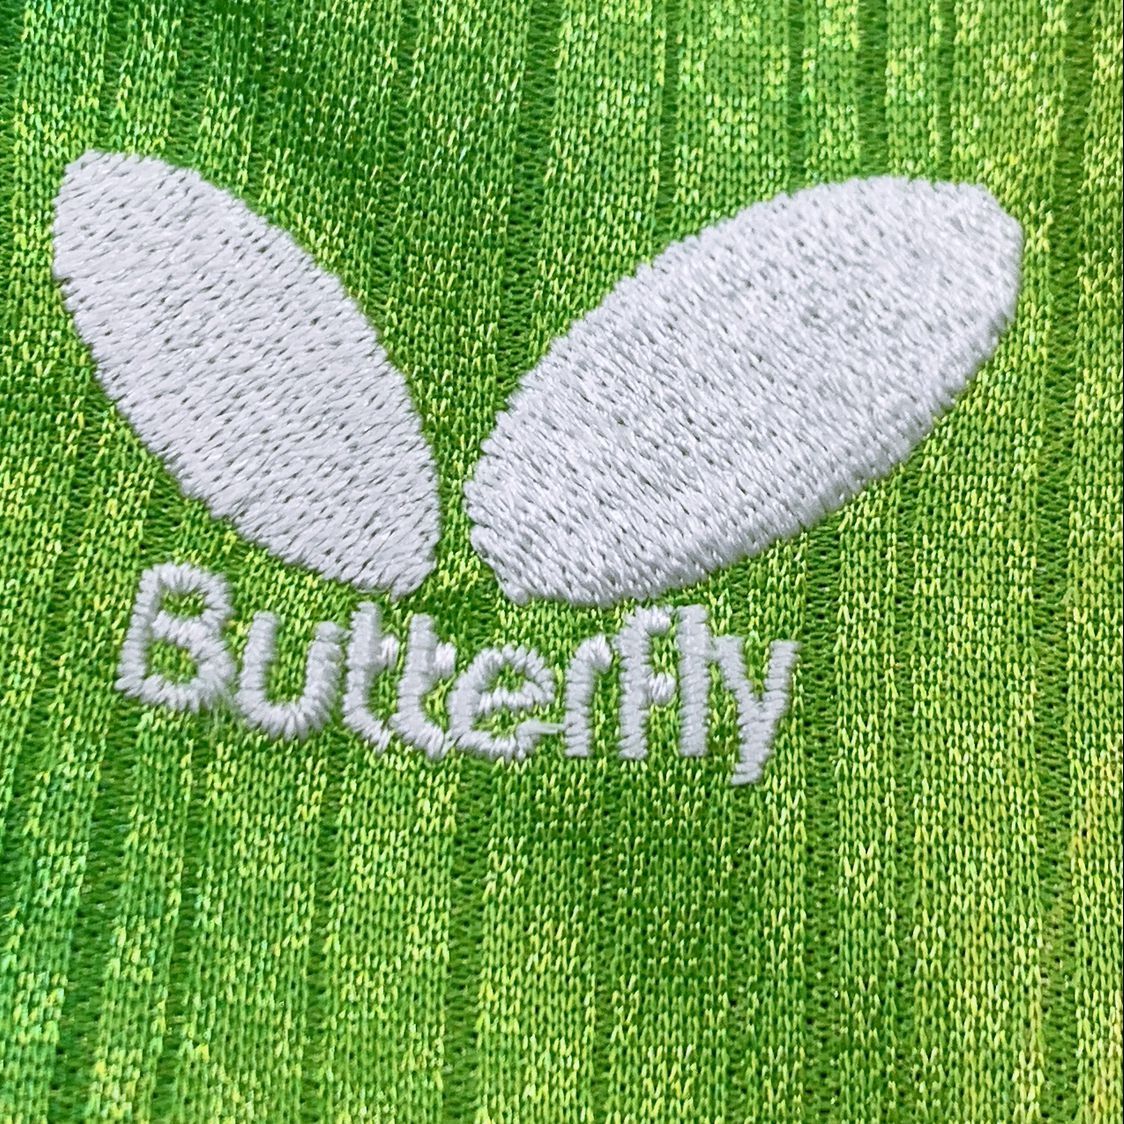 メンズ Butterfly 半袖ポロシャツ 緑 グリーン スポーティー カジュアル ラフ ポリエステル100 バタフライ 【15996】